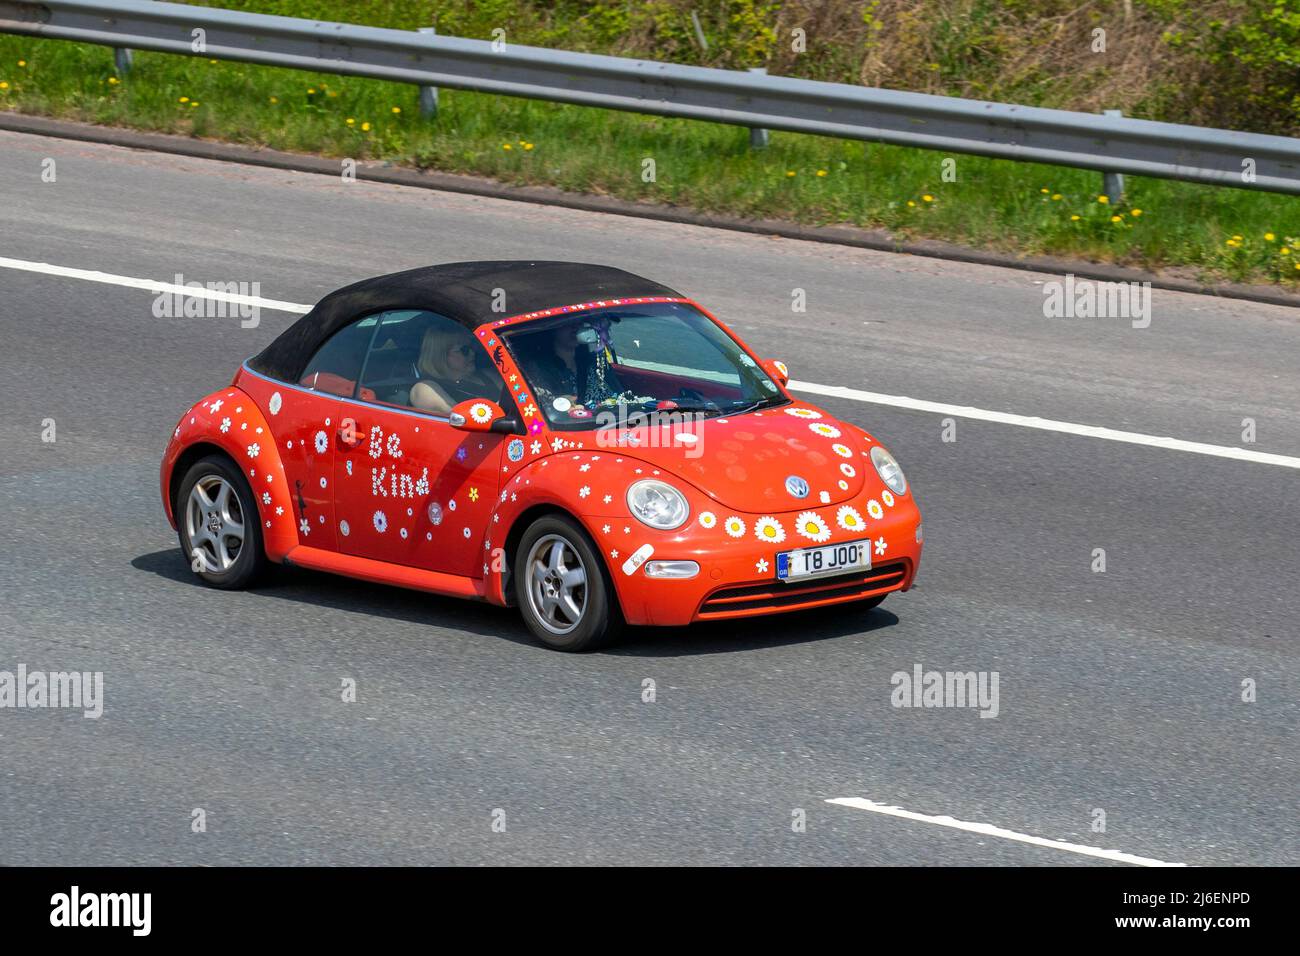 'Be Kind' 2004 orange personnalisé sur mesure VW Volkswagen Beetle 8V 1596cc 5 vitesses manuelle cabriolet ; conduite sur l'autoroute M61, Royaume-Uni Banque D'Images